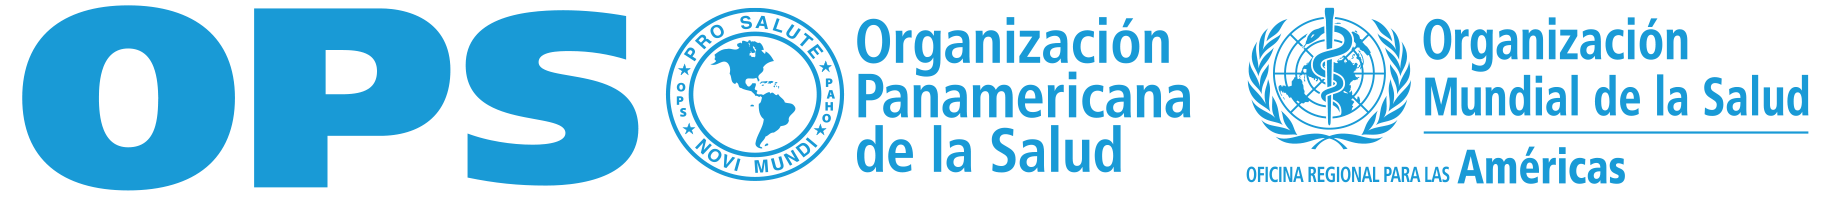 Logos organizations.es